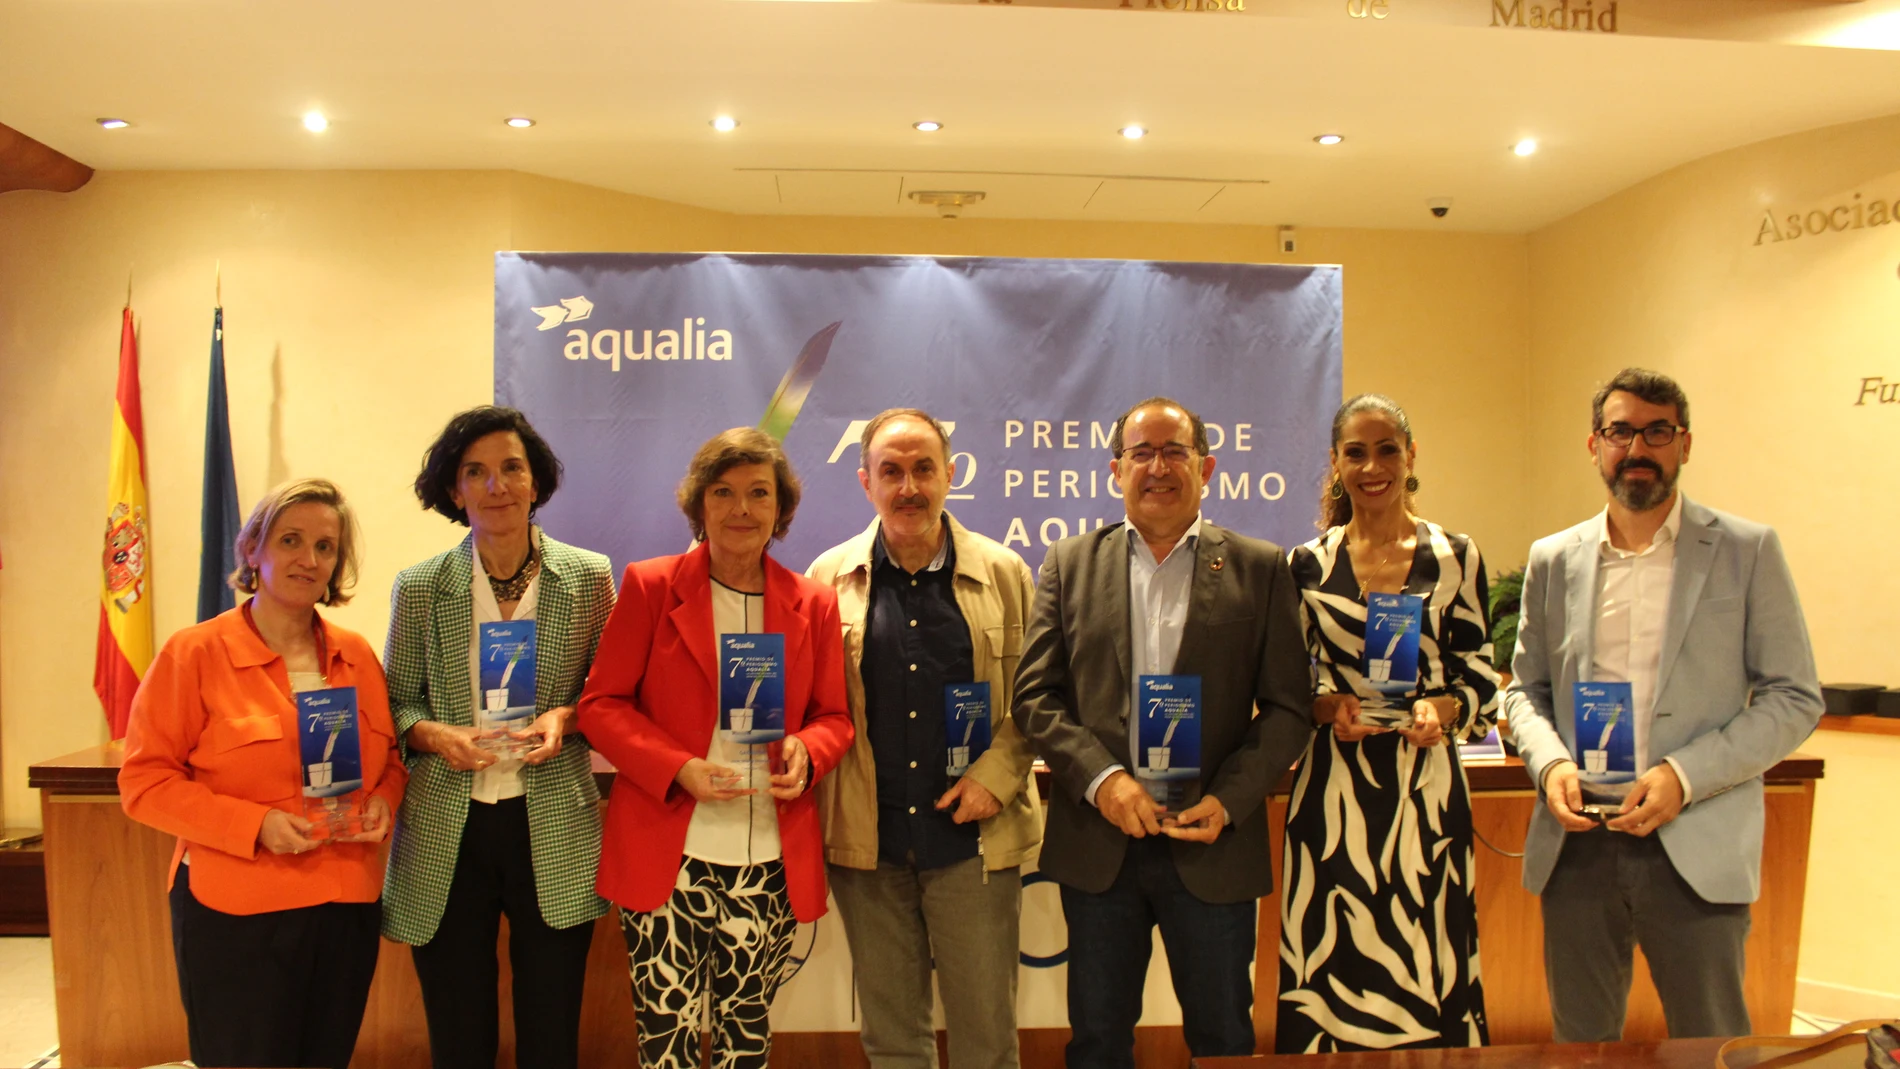 foto de familia de los periodistas galardonados en la 7ª edición del Premio de Periodismo Aqualia